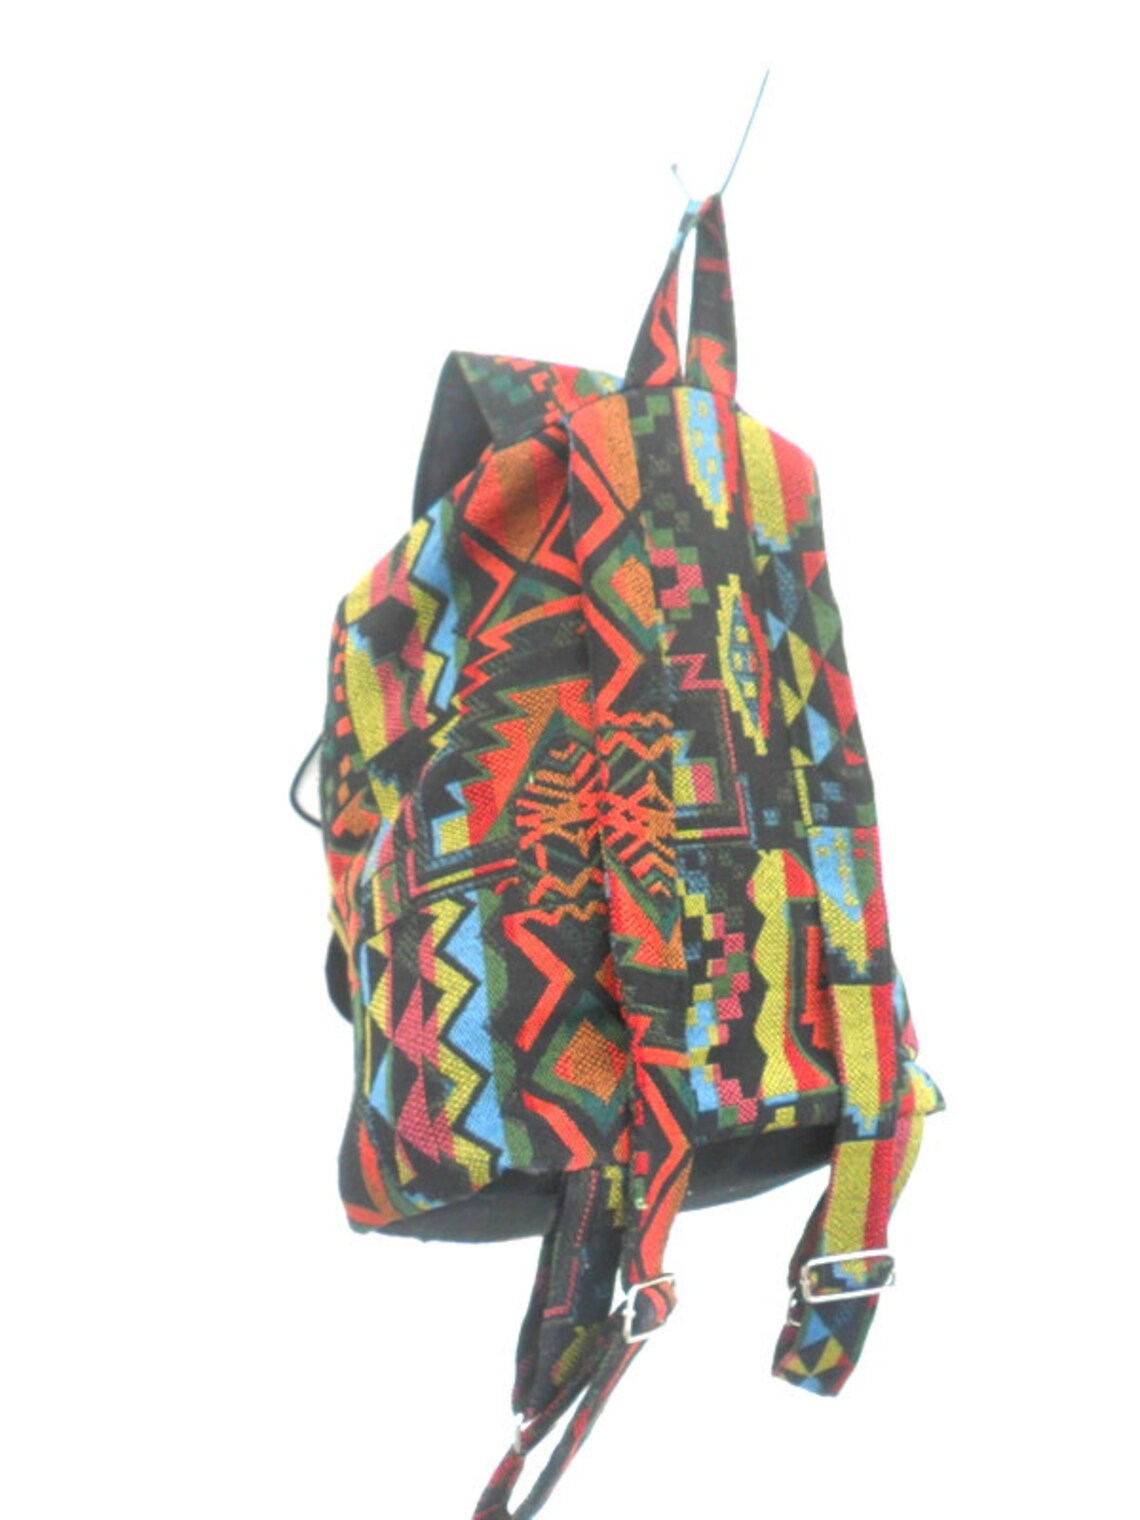 Backpack Bag Shoulder Bag Multicolor Crossbody Bag Messenger - Etsy